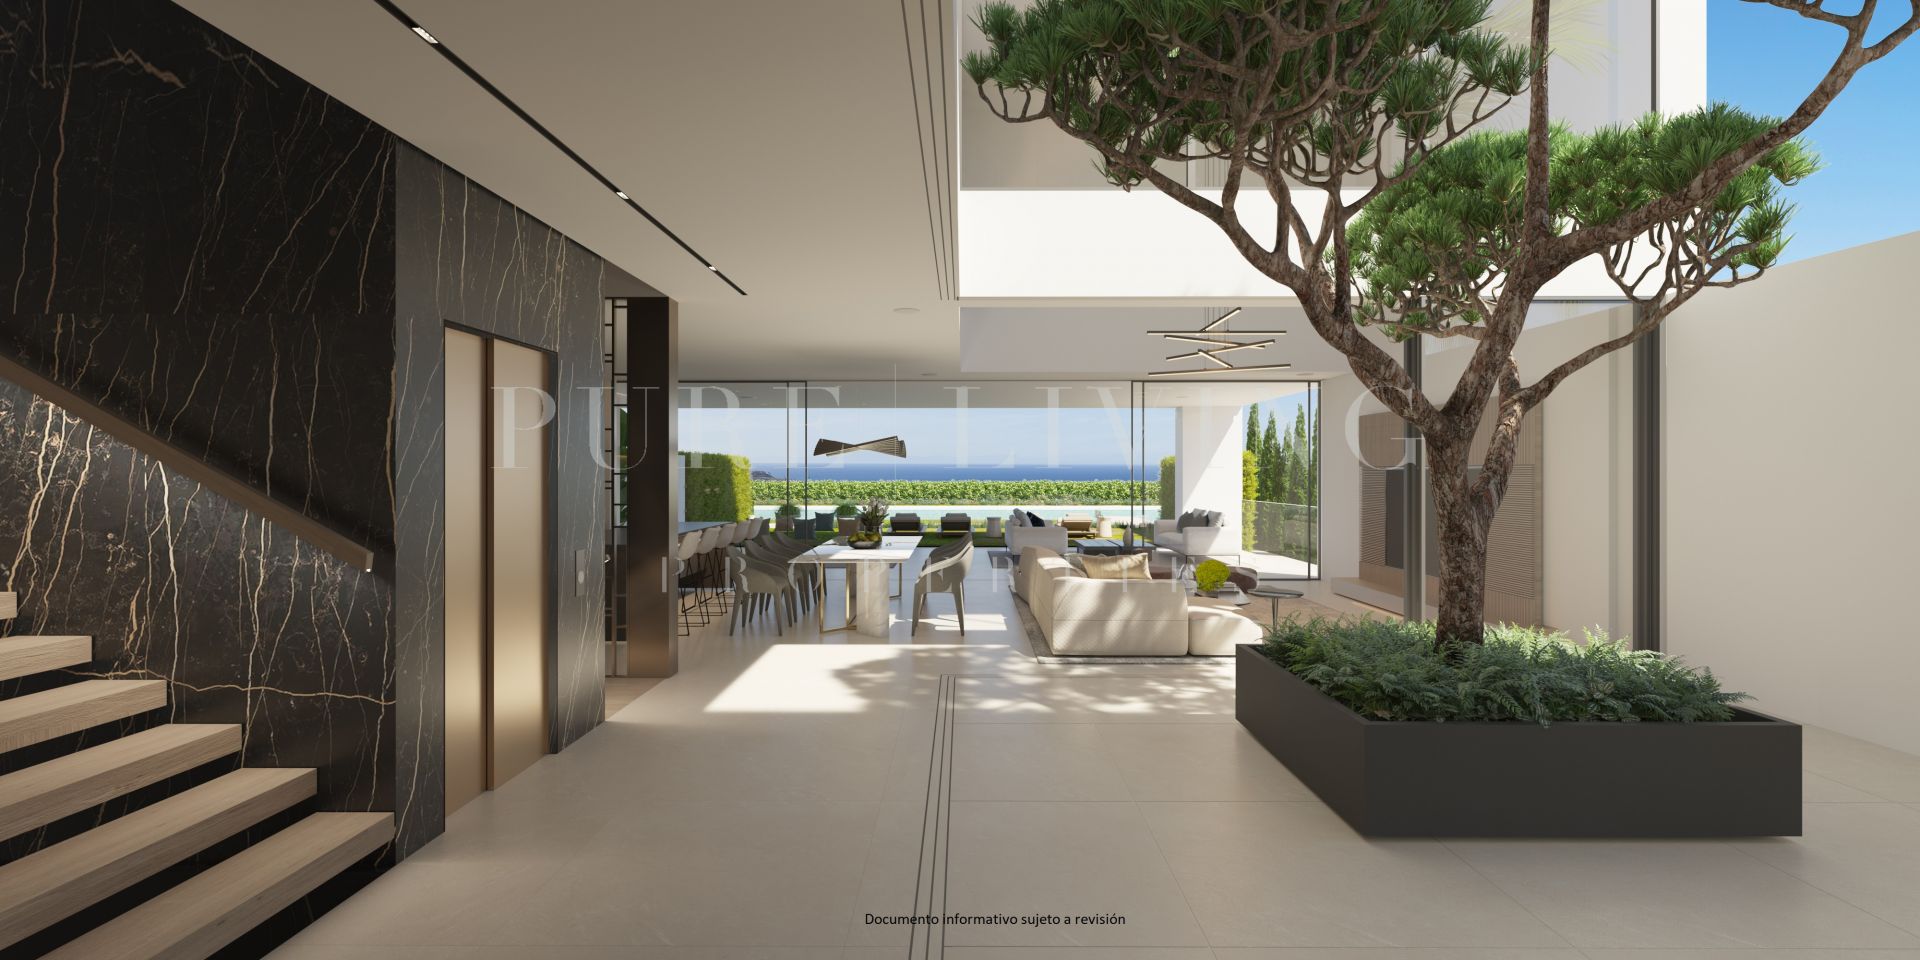 Spectaculaire gloednieuwe super luxe moderne villa met uitzicht op zee en 300 meter van de stranden van de Golden Mile.